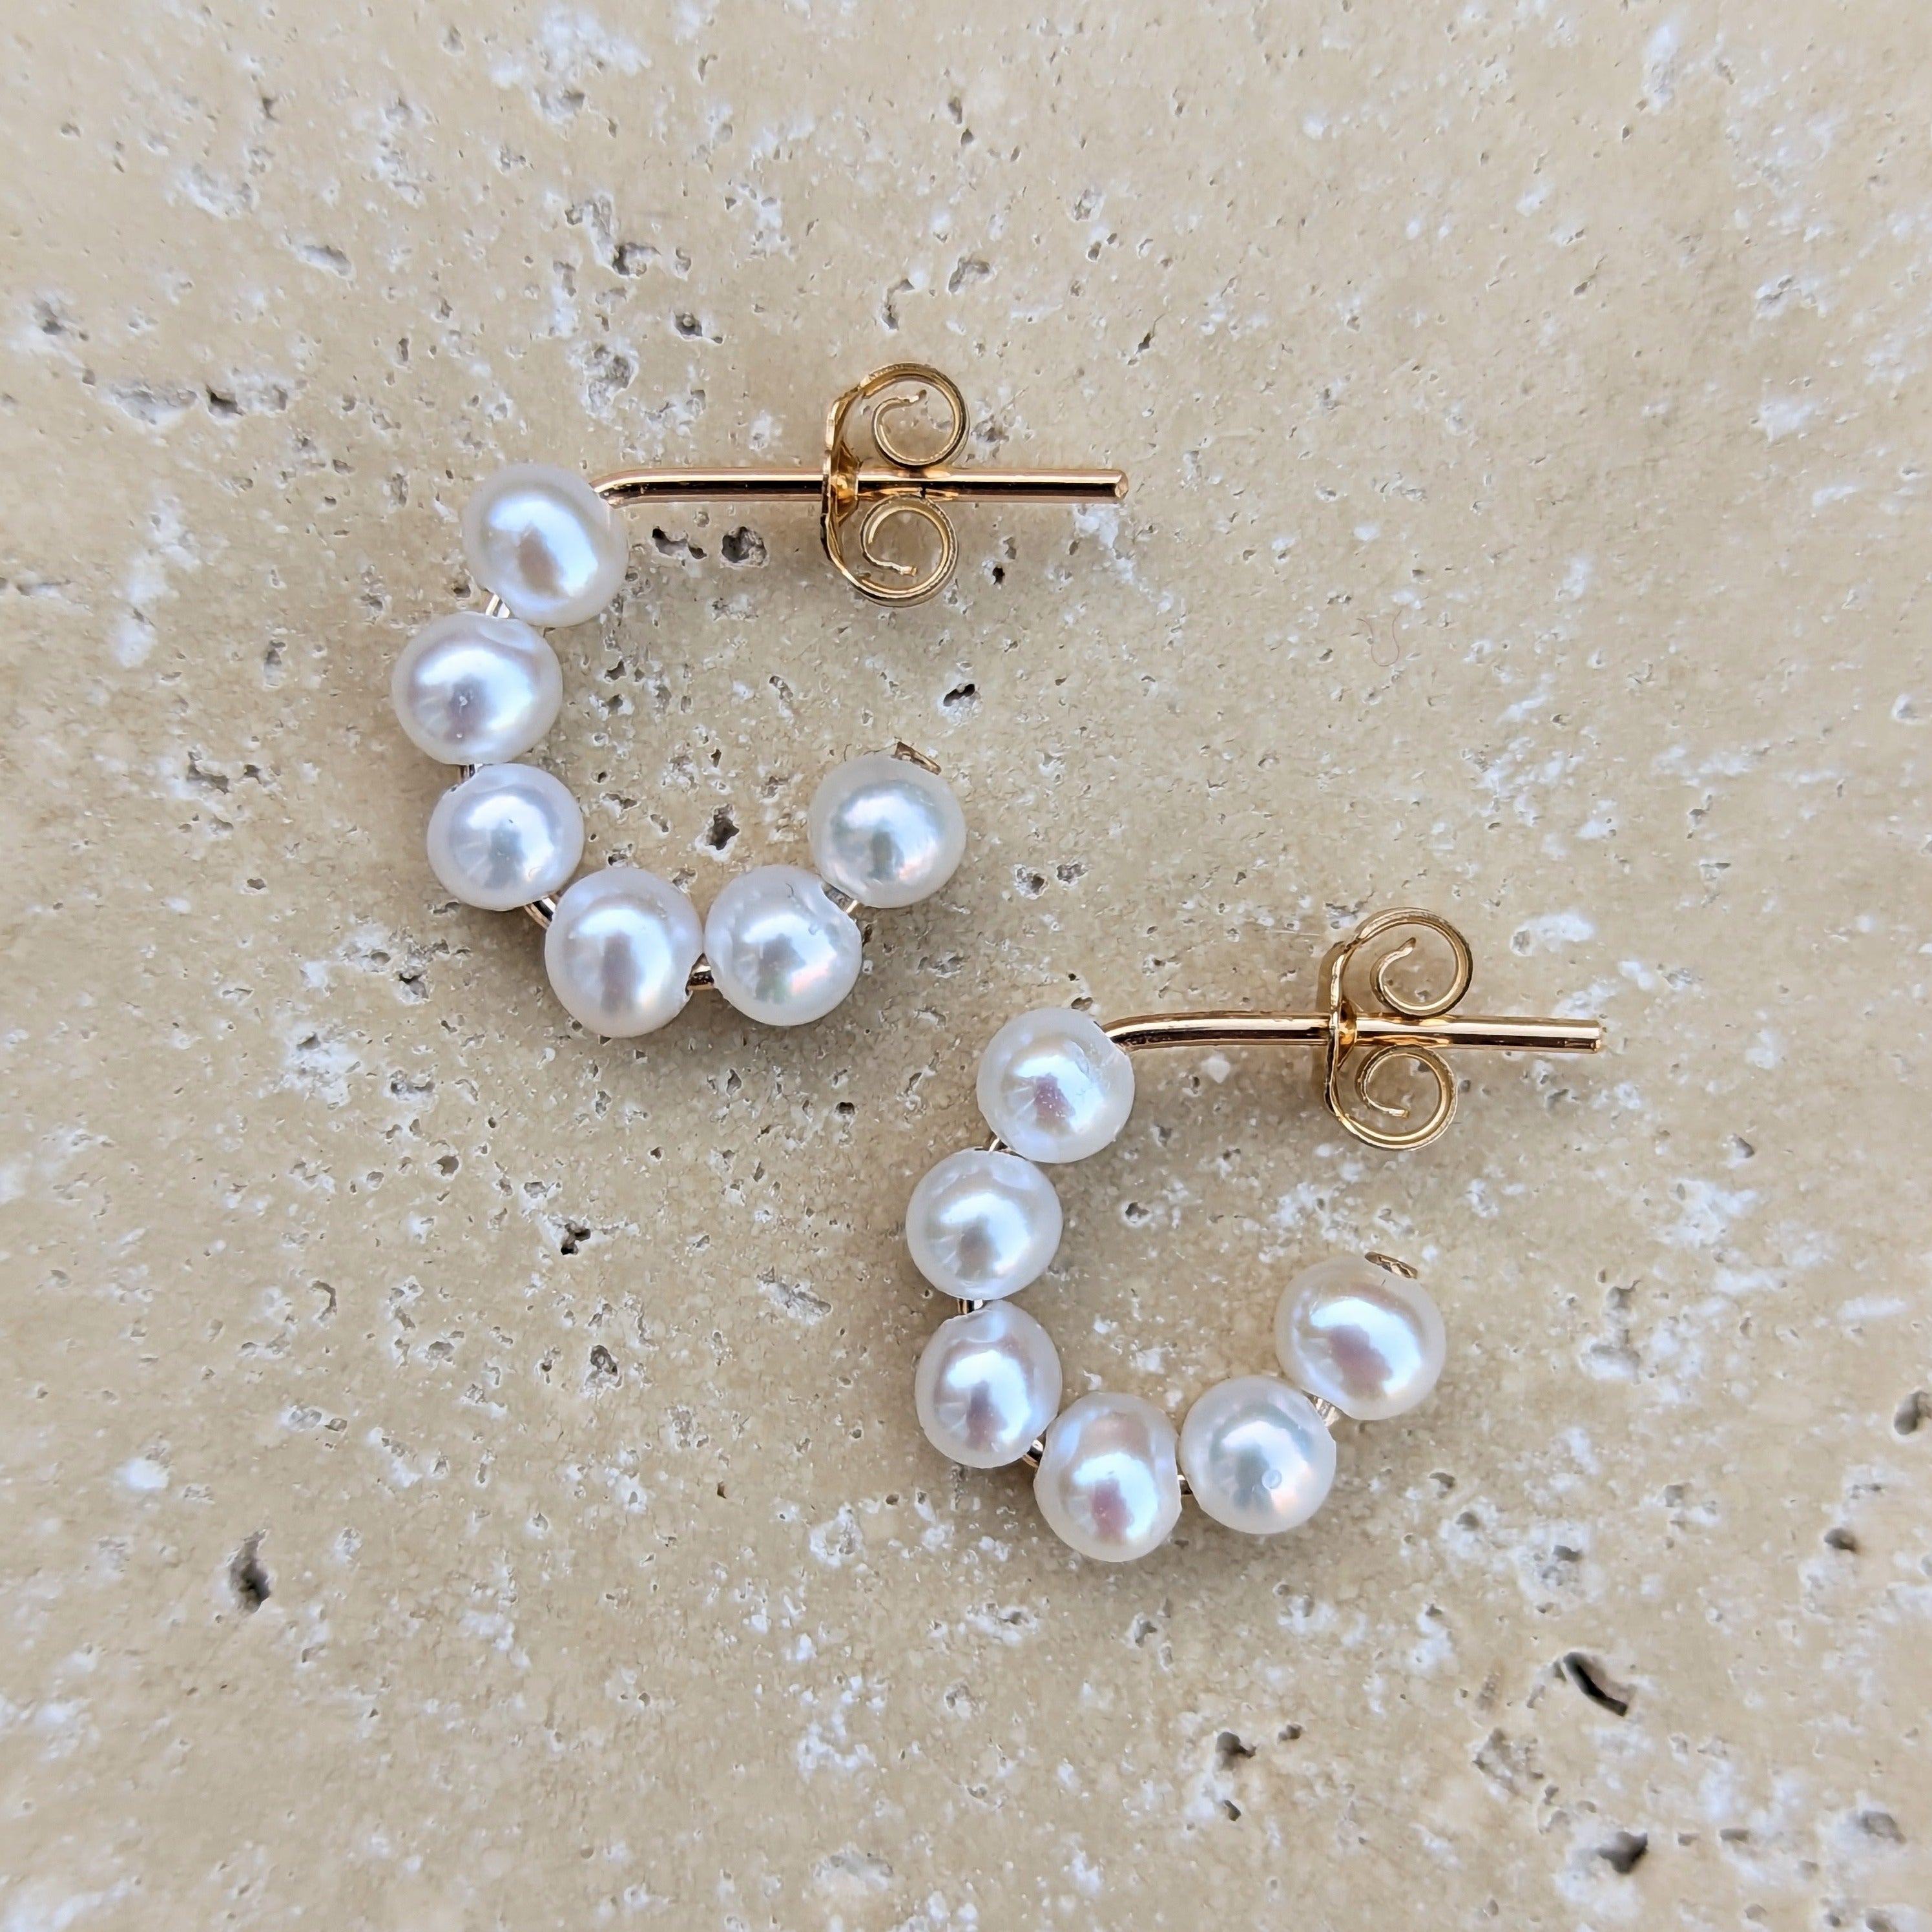 Pearl stud hoop earrings in gold filled